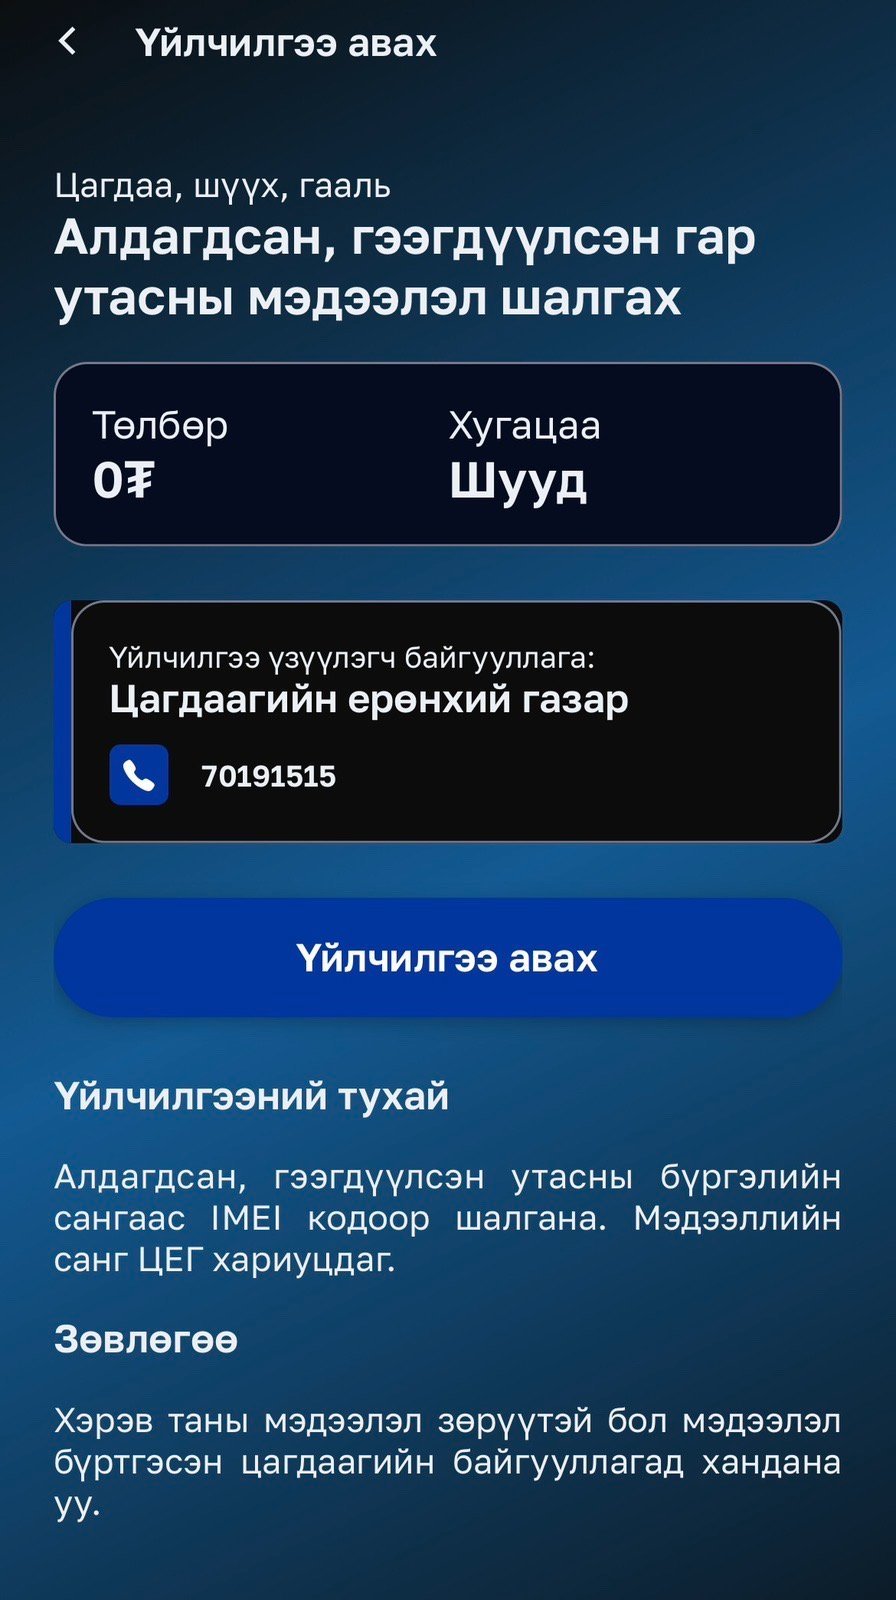 Хулгайн утас худалдан авах гэж буй эсэхээ E-Mongolia порталаас мэдэх боломжтой